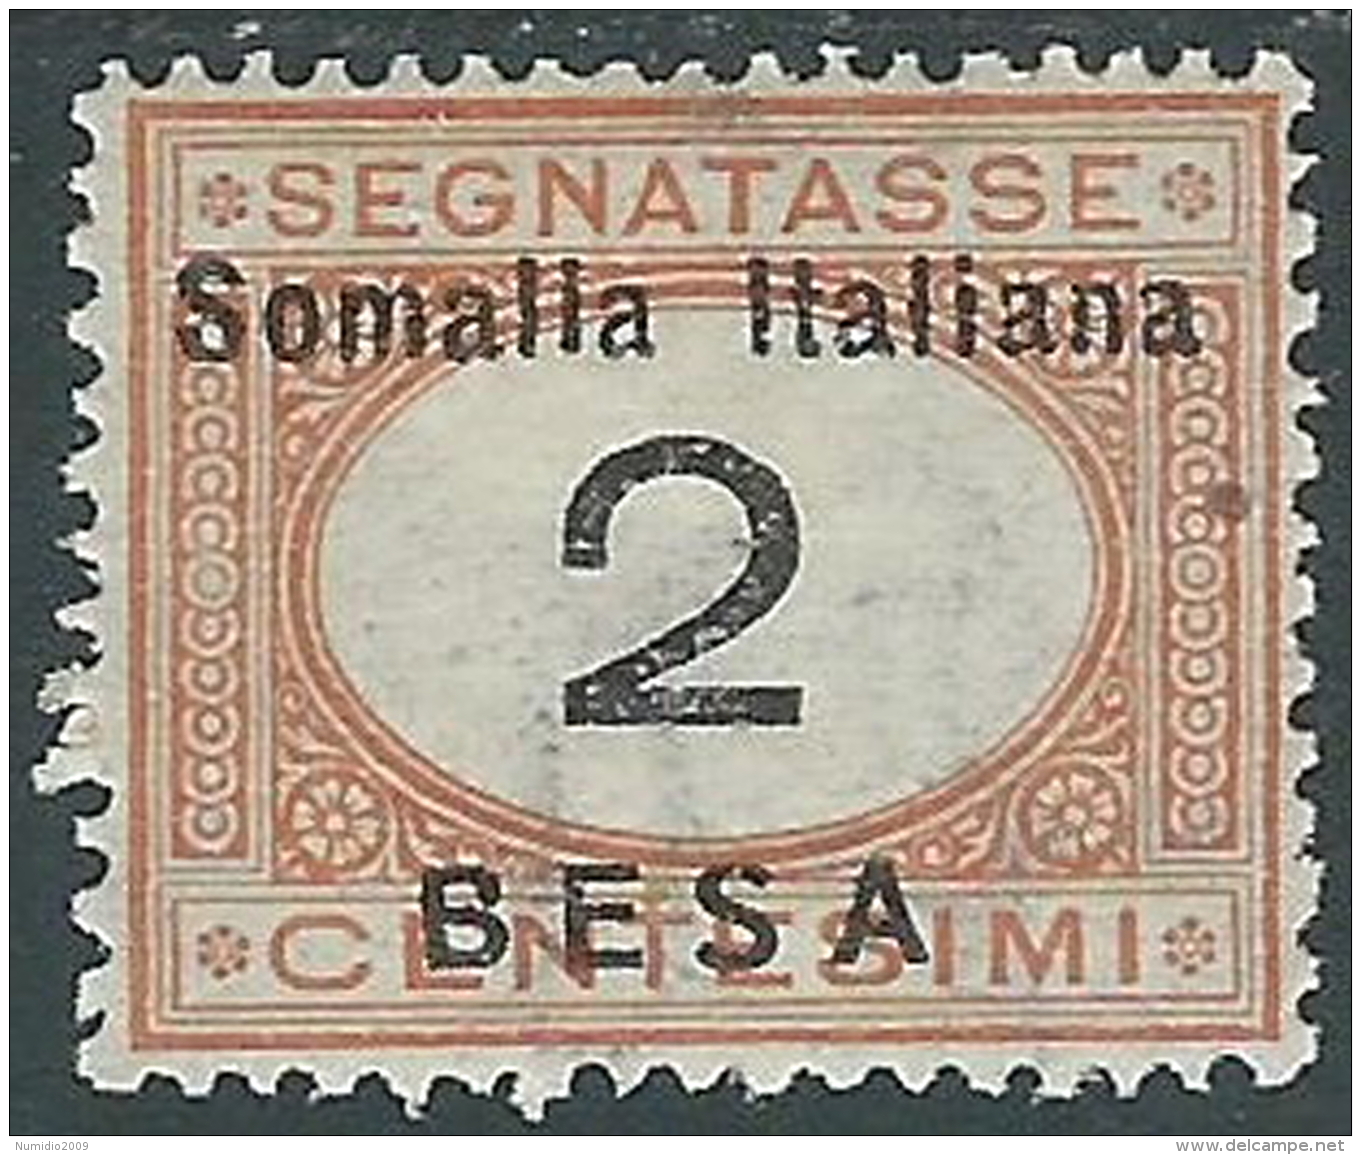 1923 SOMALIA SEGNATASSE 2 B MH * - I48-9 - Somalia